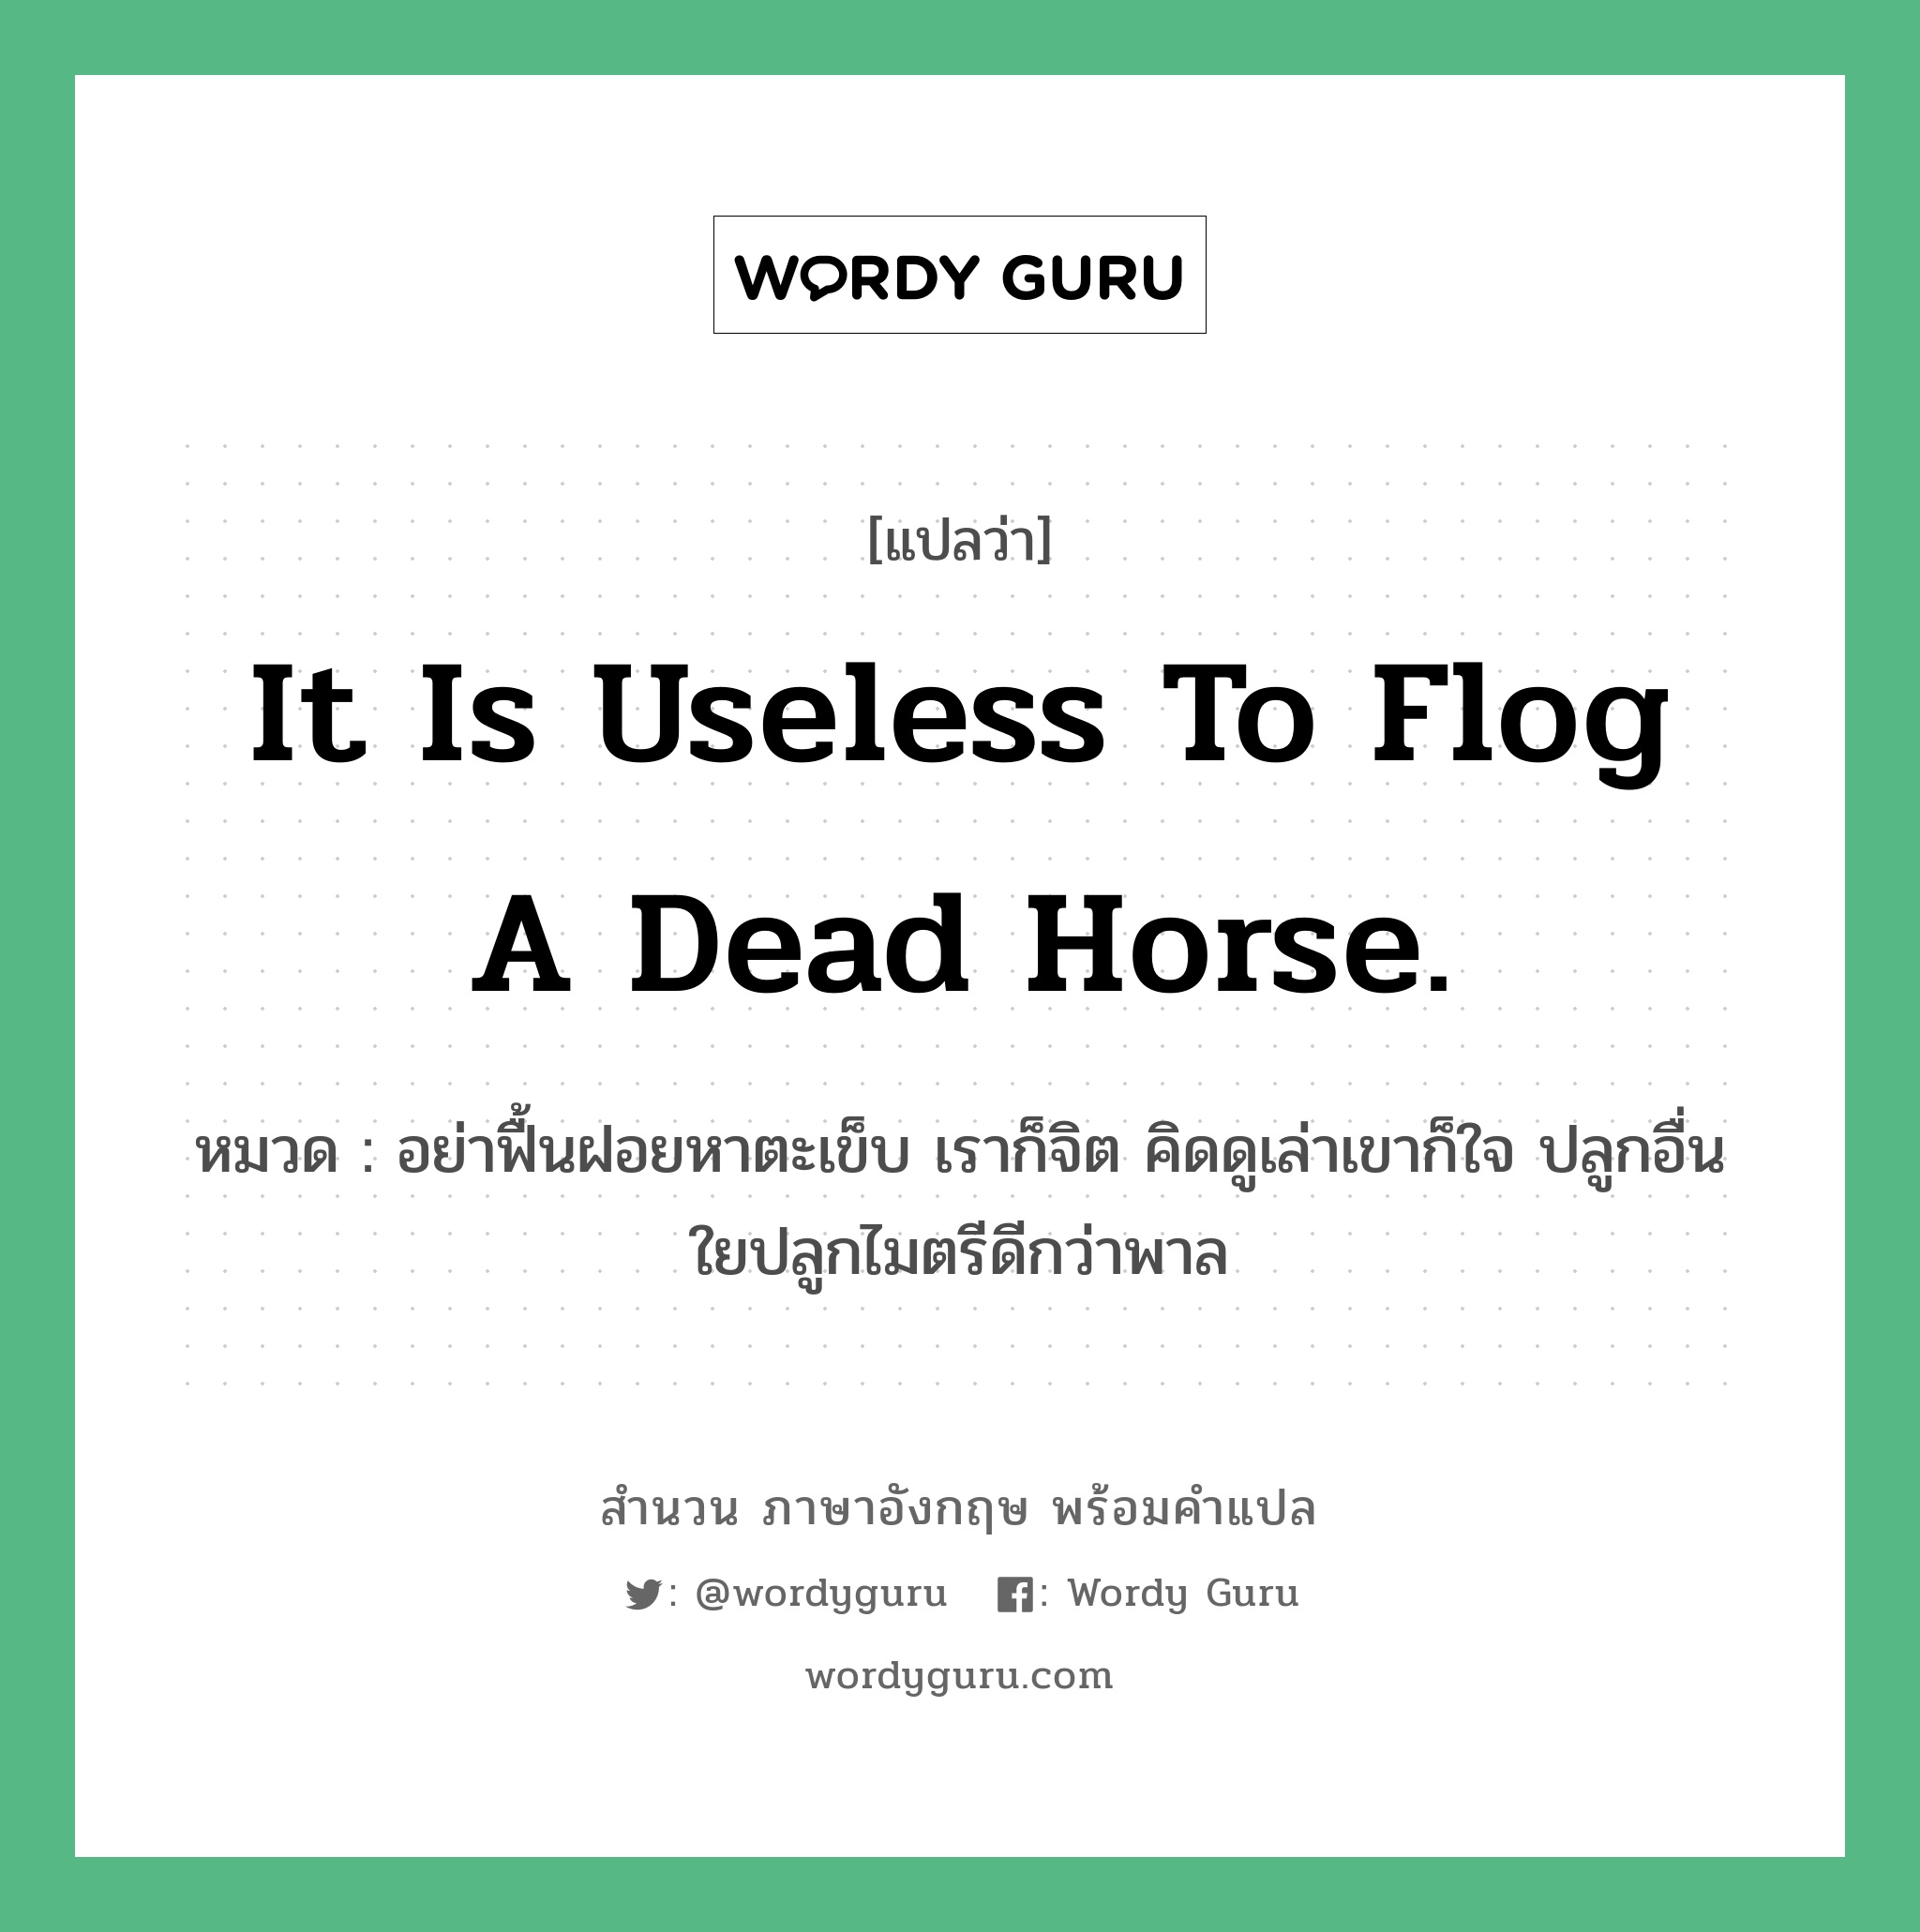 It is useless to flog a dead horse. แปลว่า? คำศัพท์ในกลุ่มประเภท คำสุภาษิต ภาษาอังกฤษ, สำนวนภาษาอังกฤษ It is useless to flog a dead horse. หมวด อย่าฟื้นฝอยหาตะเข็บ เราก็จิต คิดดูเล่าเขาก็ใจ ปลูกอื่นใยปลูกไมตรีดีกว่าพาล คำสุภาษิต ภาษาอังกฤษ หมวด คำสุภาษิต ภาษาอังกฤษ